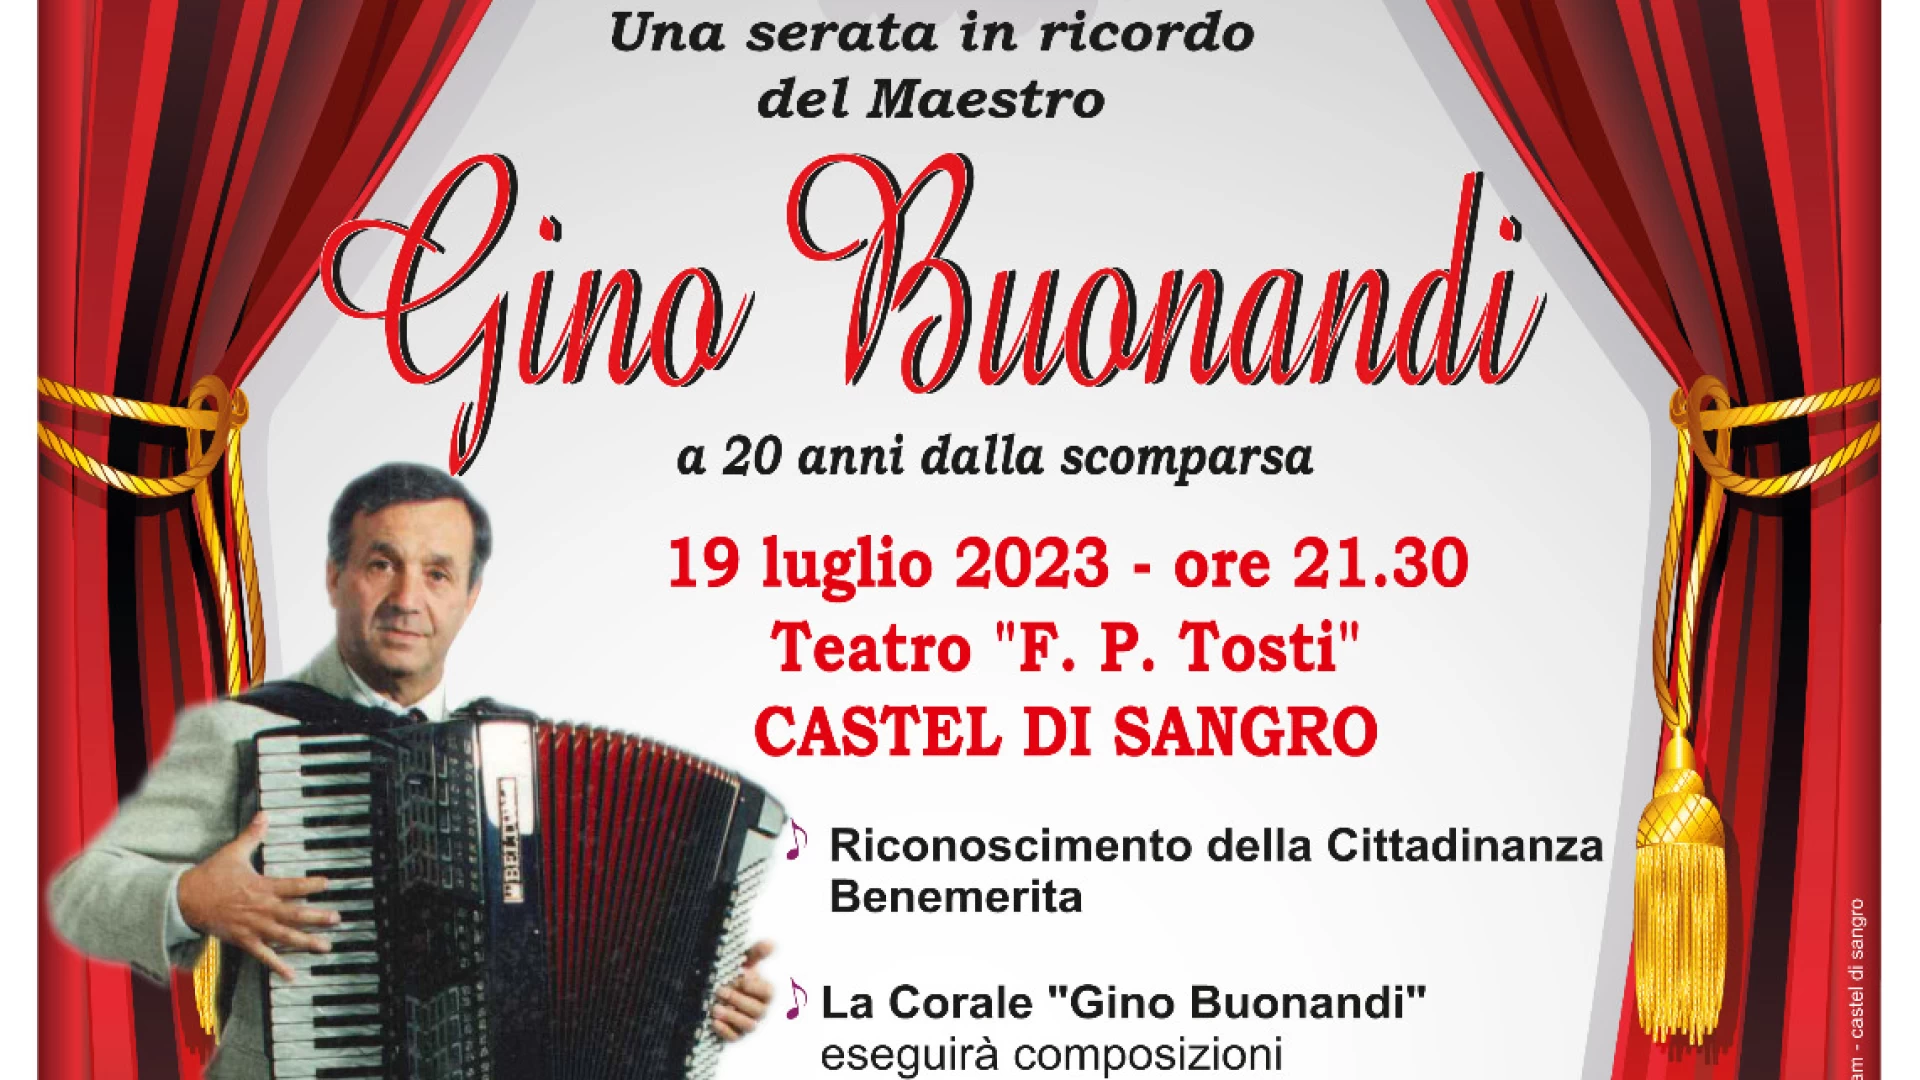 Castel Di Sangro: questa sera evento in ricordo del Maestro Gino Buonandi a vent’anni dalla scomparsa.